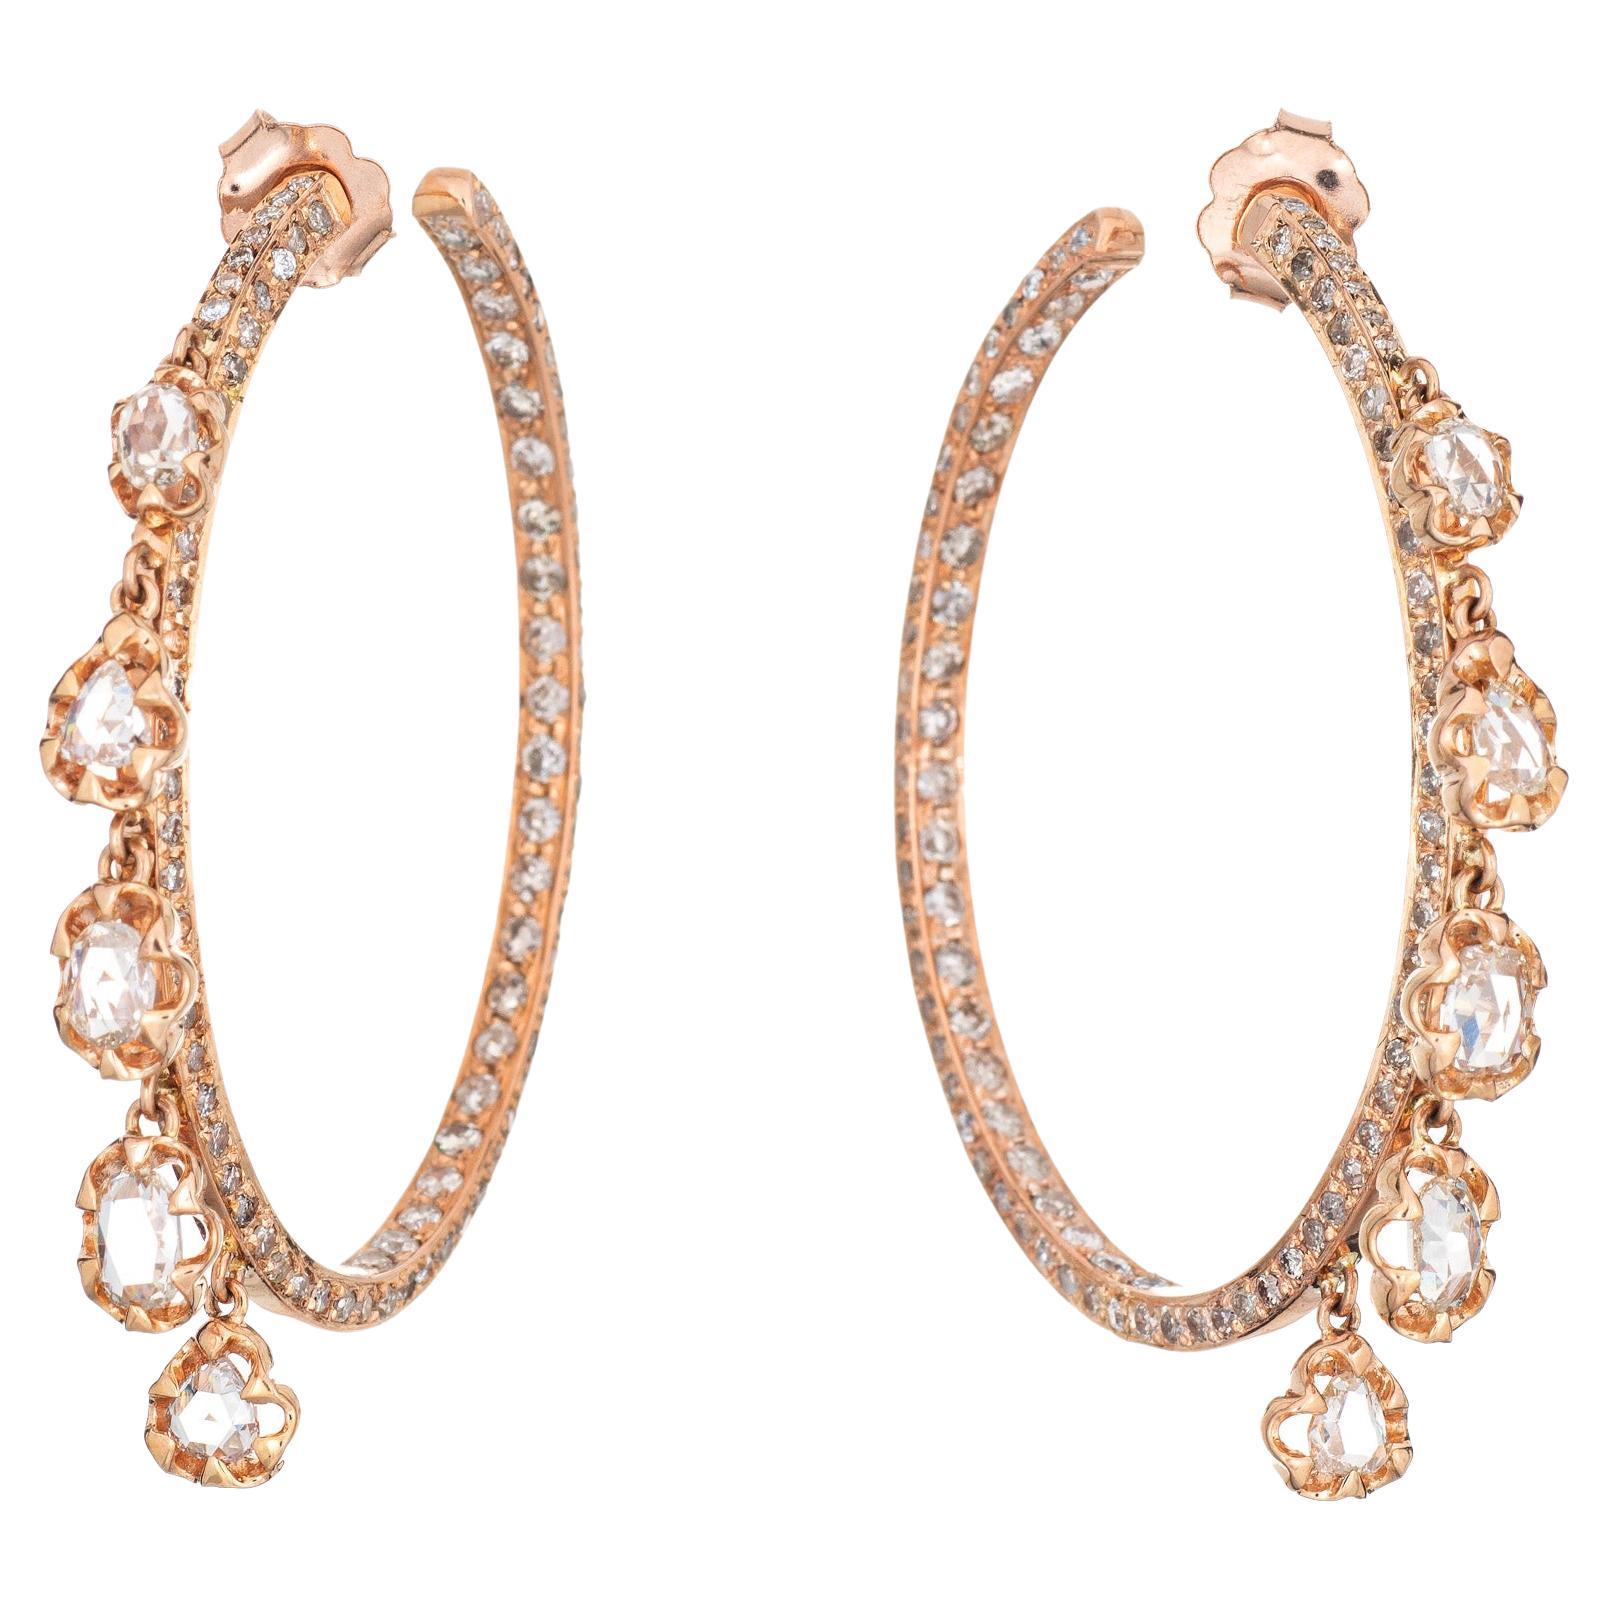 1.50ct Diamond Fringe Hoop Earrings Estate 18k Rose Gold Inside Out Jewelry